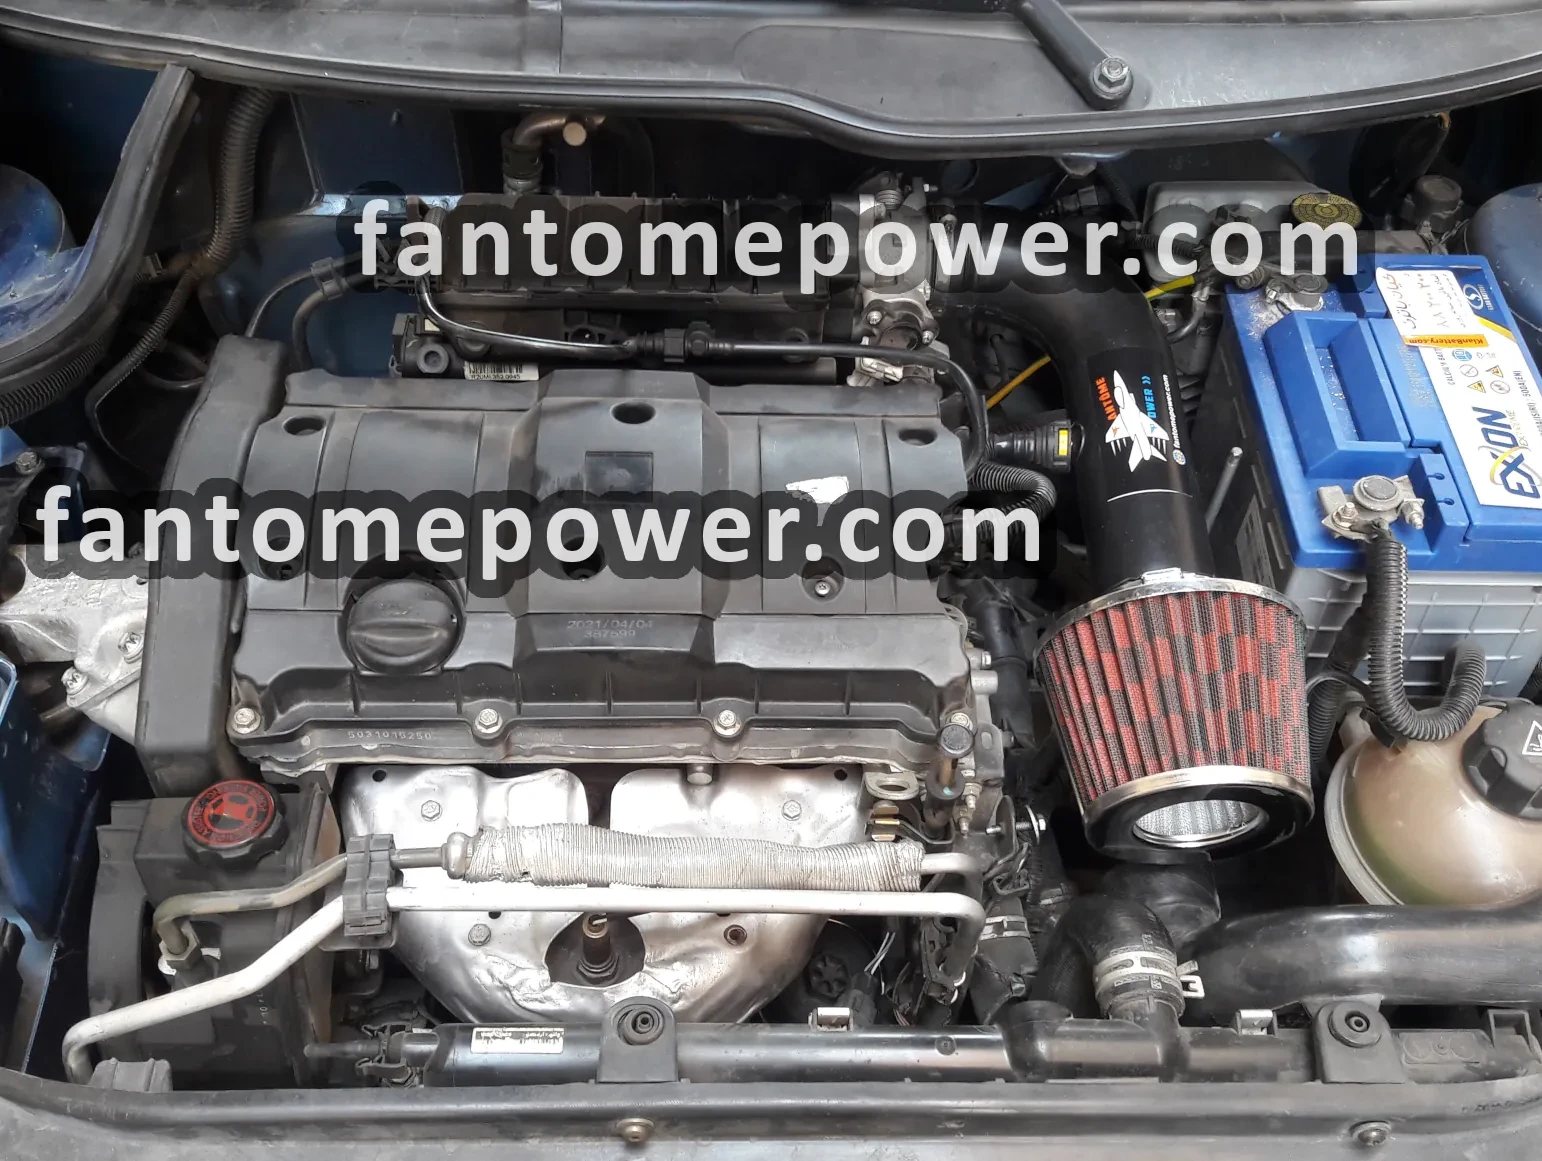 installed air intake kit on Peugeot 206